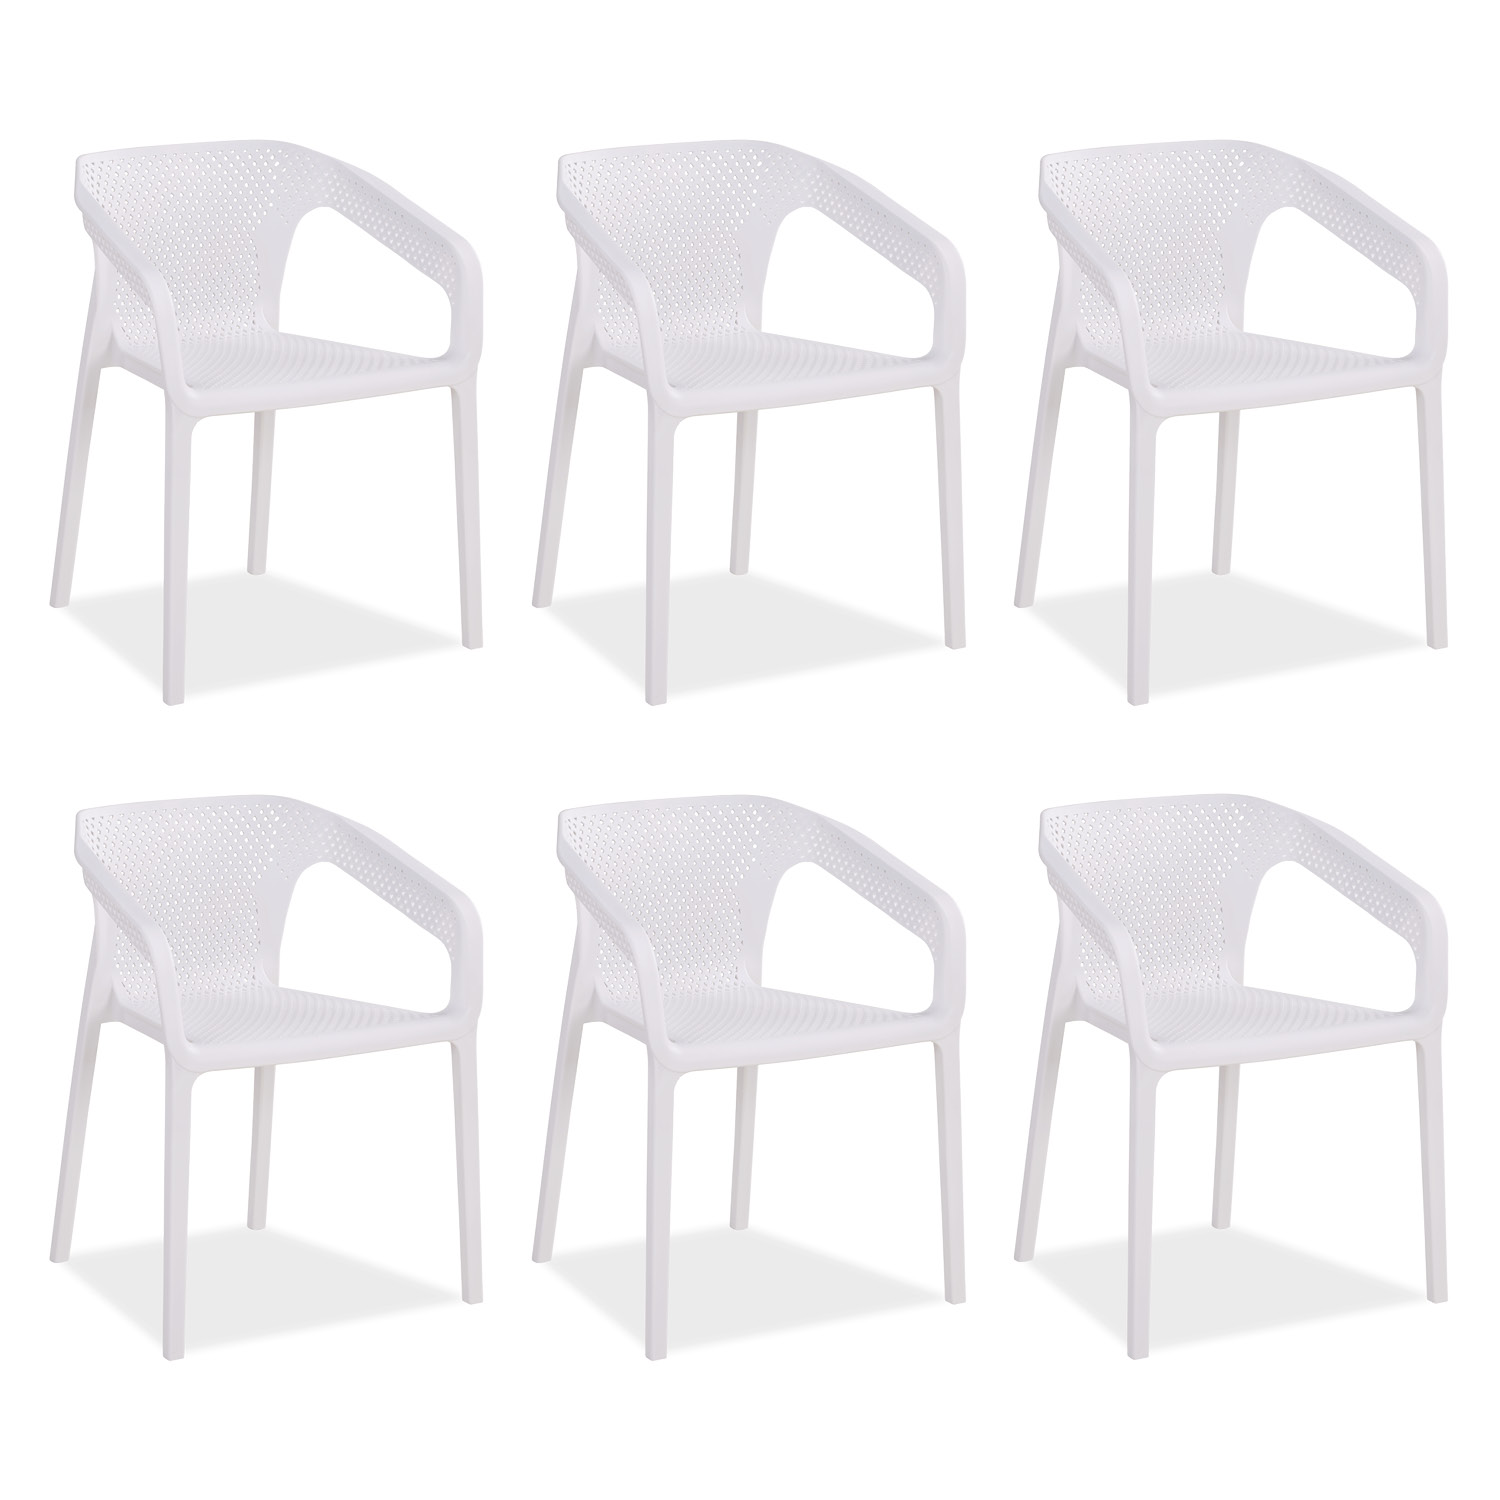 Gartenstuhl mit Armlehnen 6er Set Gartensessel Weiß Stühle Kunststoff Stapelstühle Balkonstuhl Outdoor-Stuhl